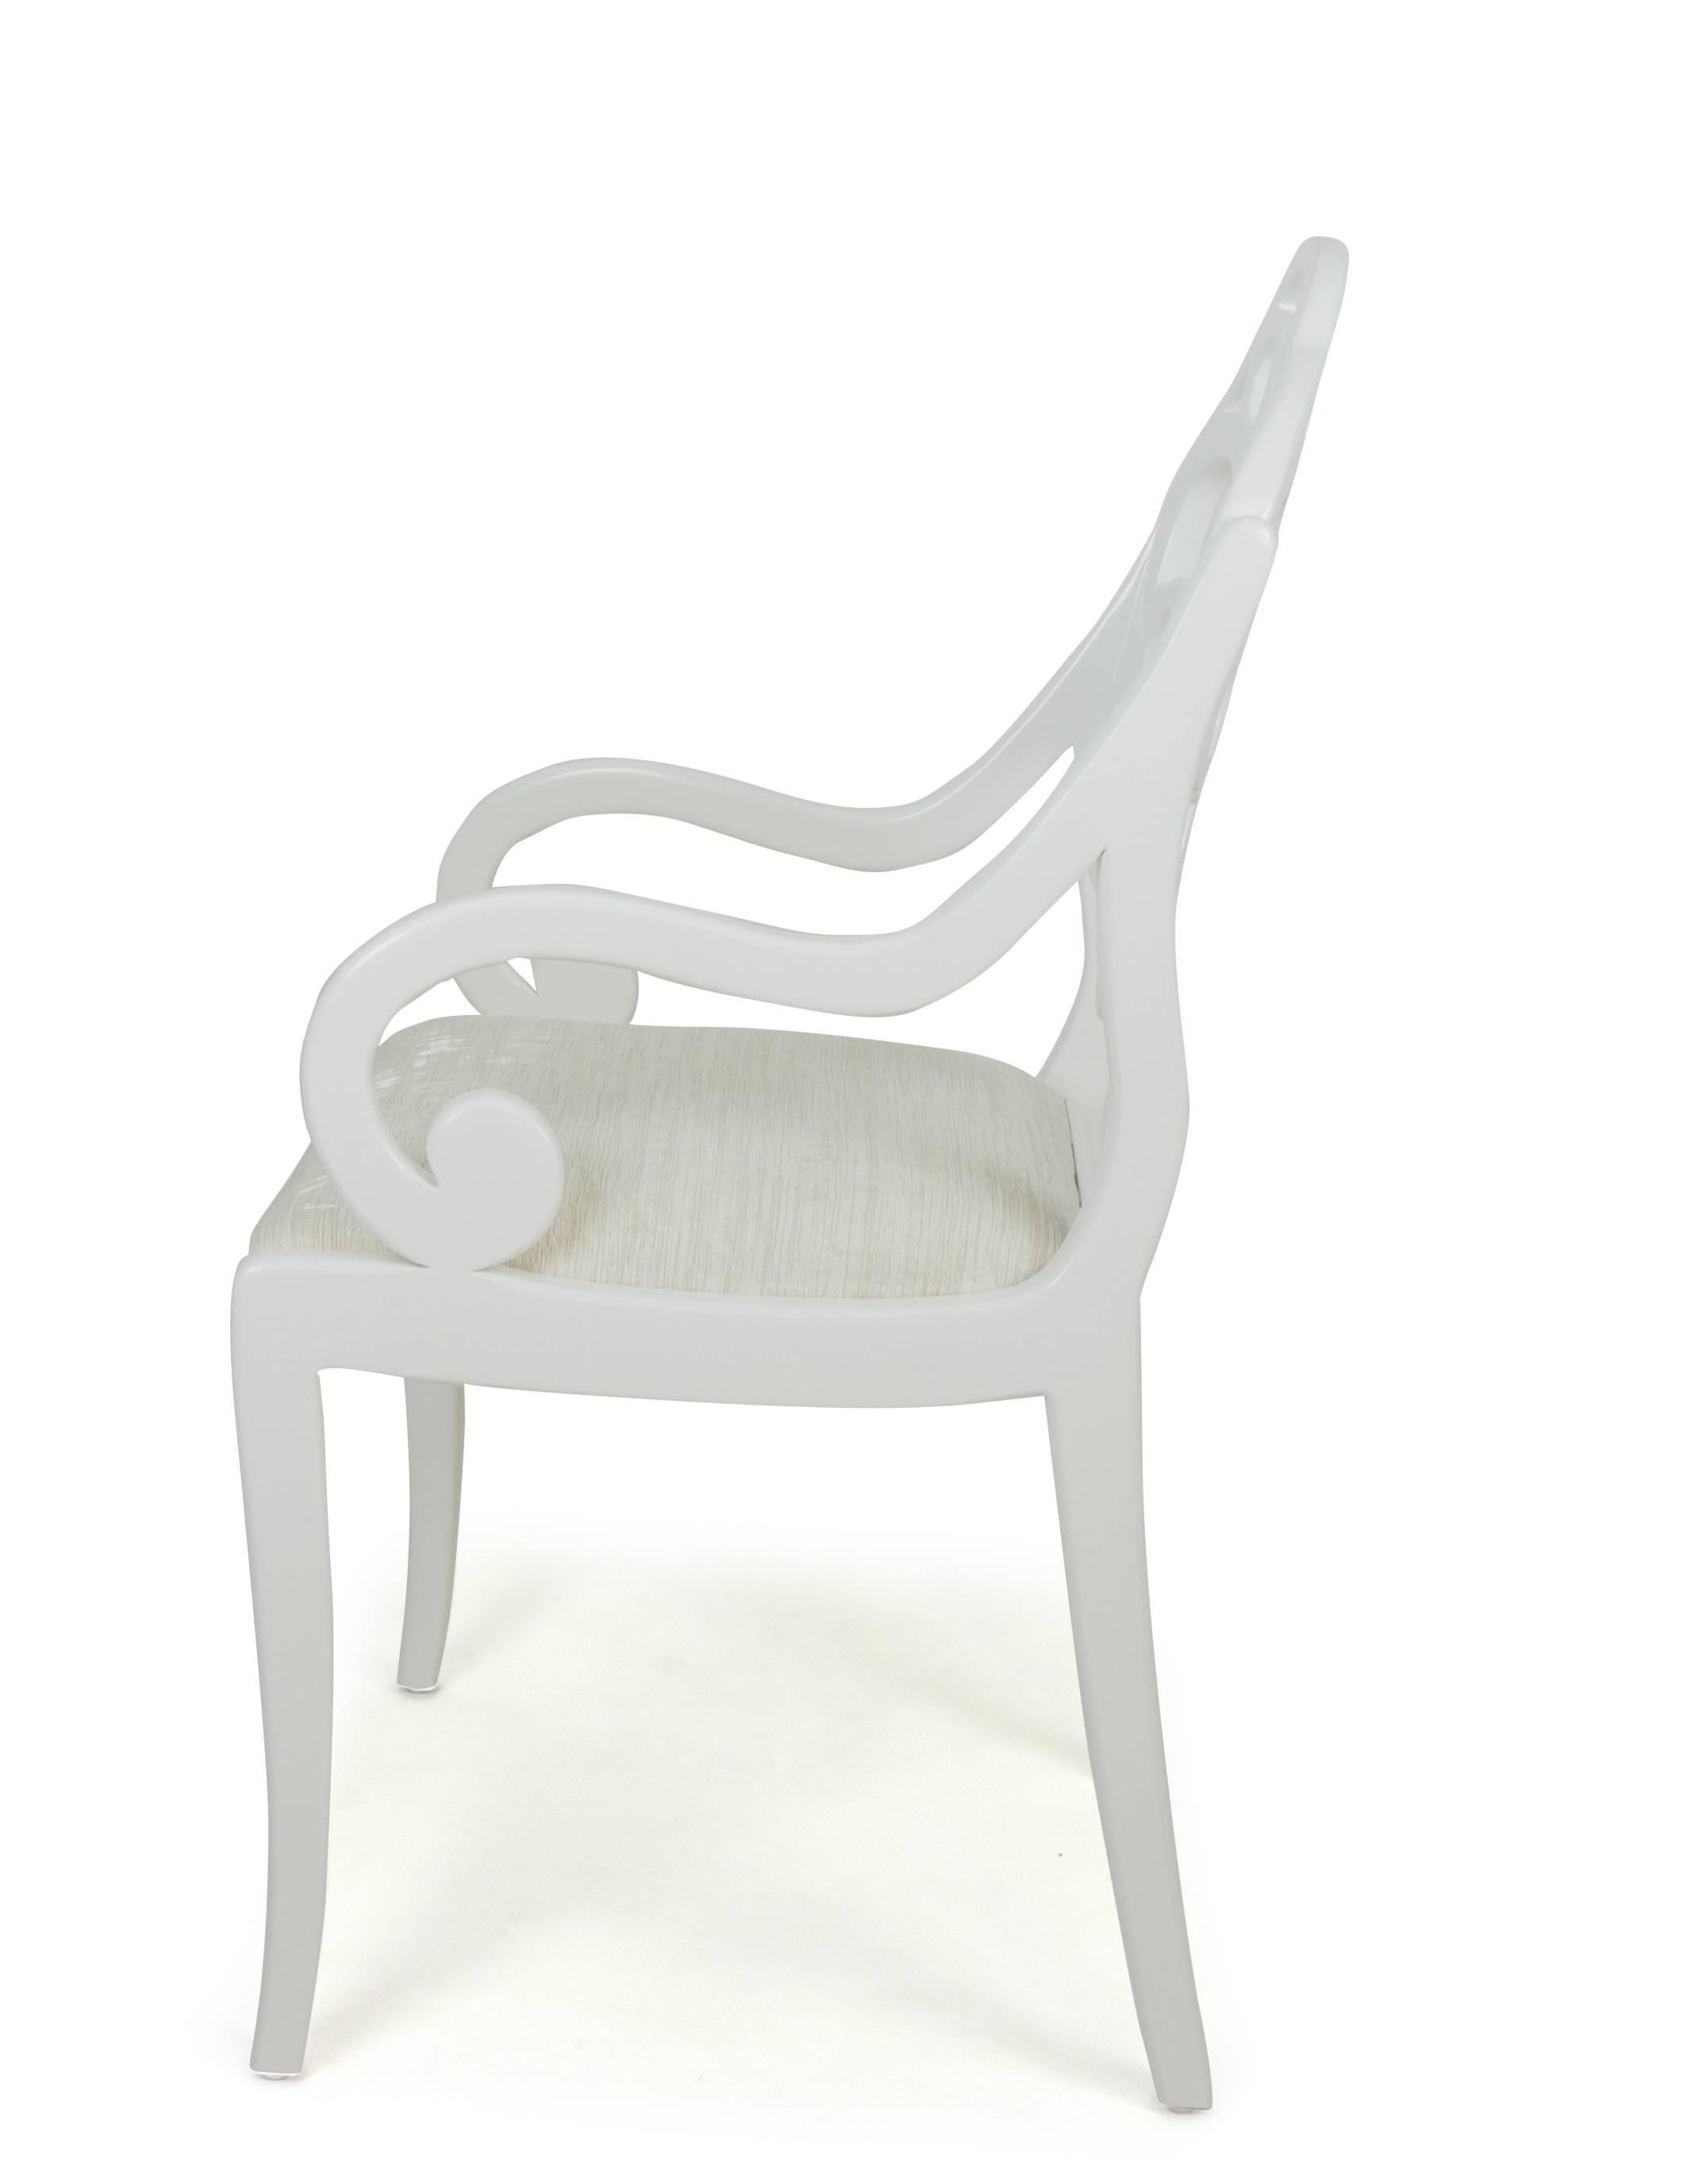 Avec des bras ressemblant à ceux de la Régence anglaise et un dossier inspiré d'un modèle d'Albert Hadley, ces chaises de salle à manger sont conçues par Jhon Ortiz et produites dans l'atelier de son entreprise à Norwalk, CT. Les chaises sont dotées